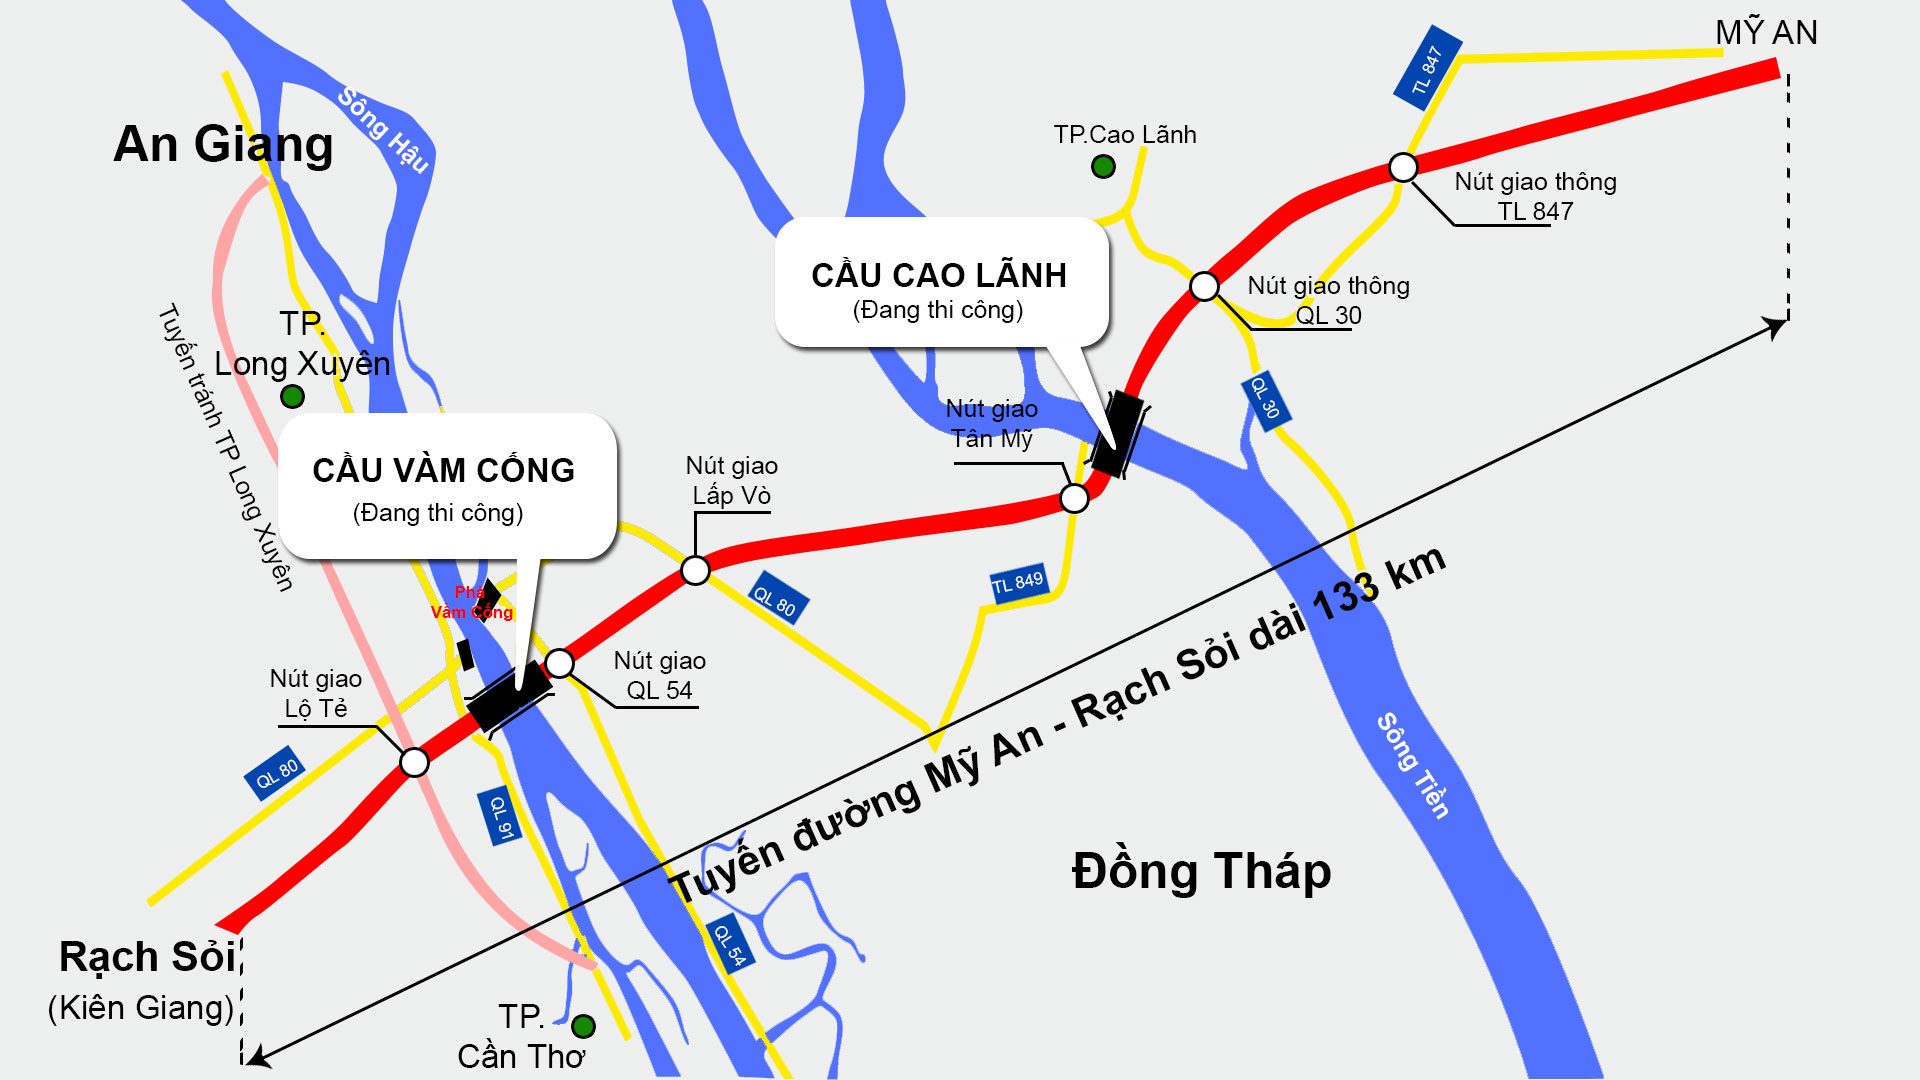 Tận hưởng sự tiện nghi đỉnh cao với tuyến cao tốc Bắc - Nam phía tây - đường cao tốc hiện đại nhất Việt Nam. Trải nghiệm thú vị khi di chuyển từ miền Bắc đến miền Nam chỉ trong vài giờ và chiêm ngưỡng những khung cảnh tuyệt đẹp xung quanh đường cao tốc.